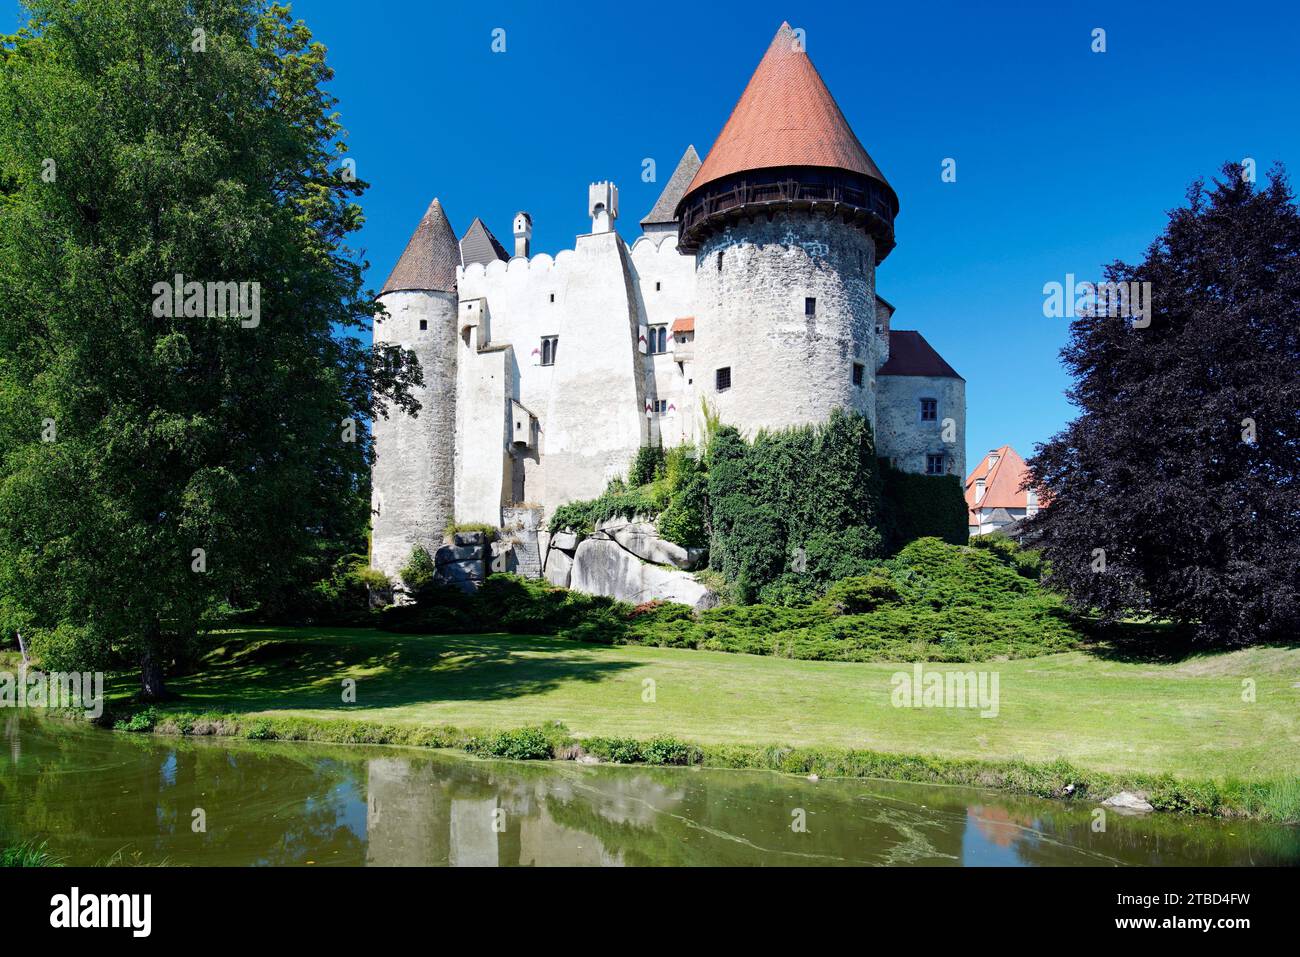 inner courtyard, Heidenreichstein Castle, von Kinsky, Lower Austria, Austria Stock Photo